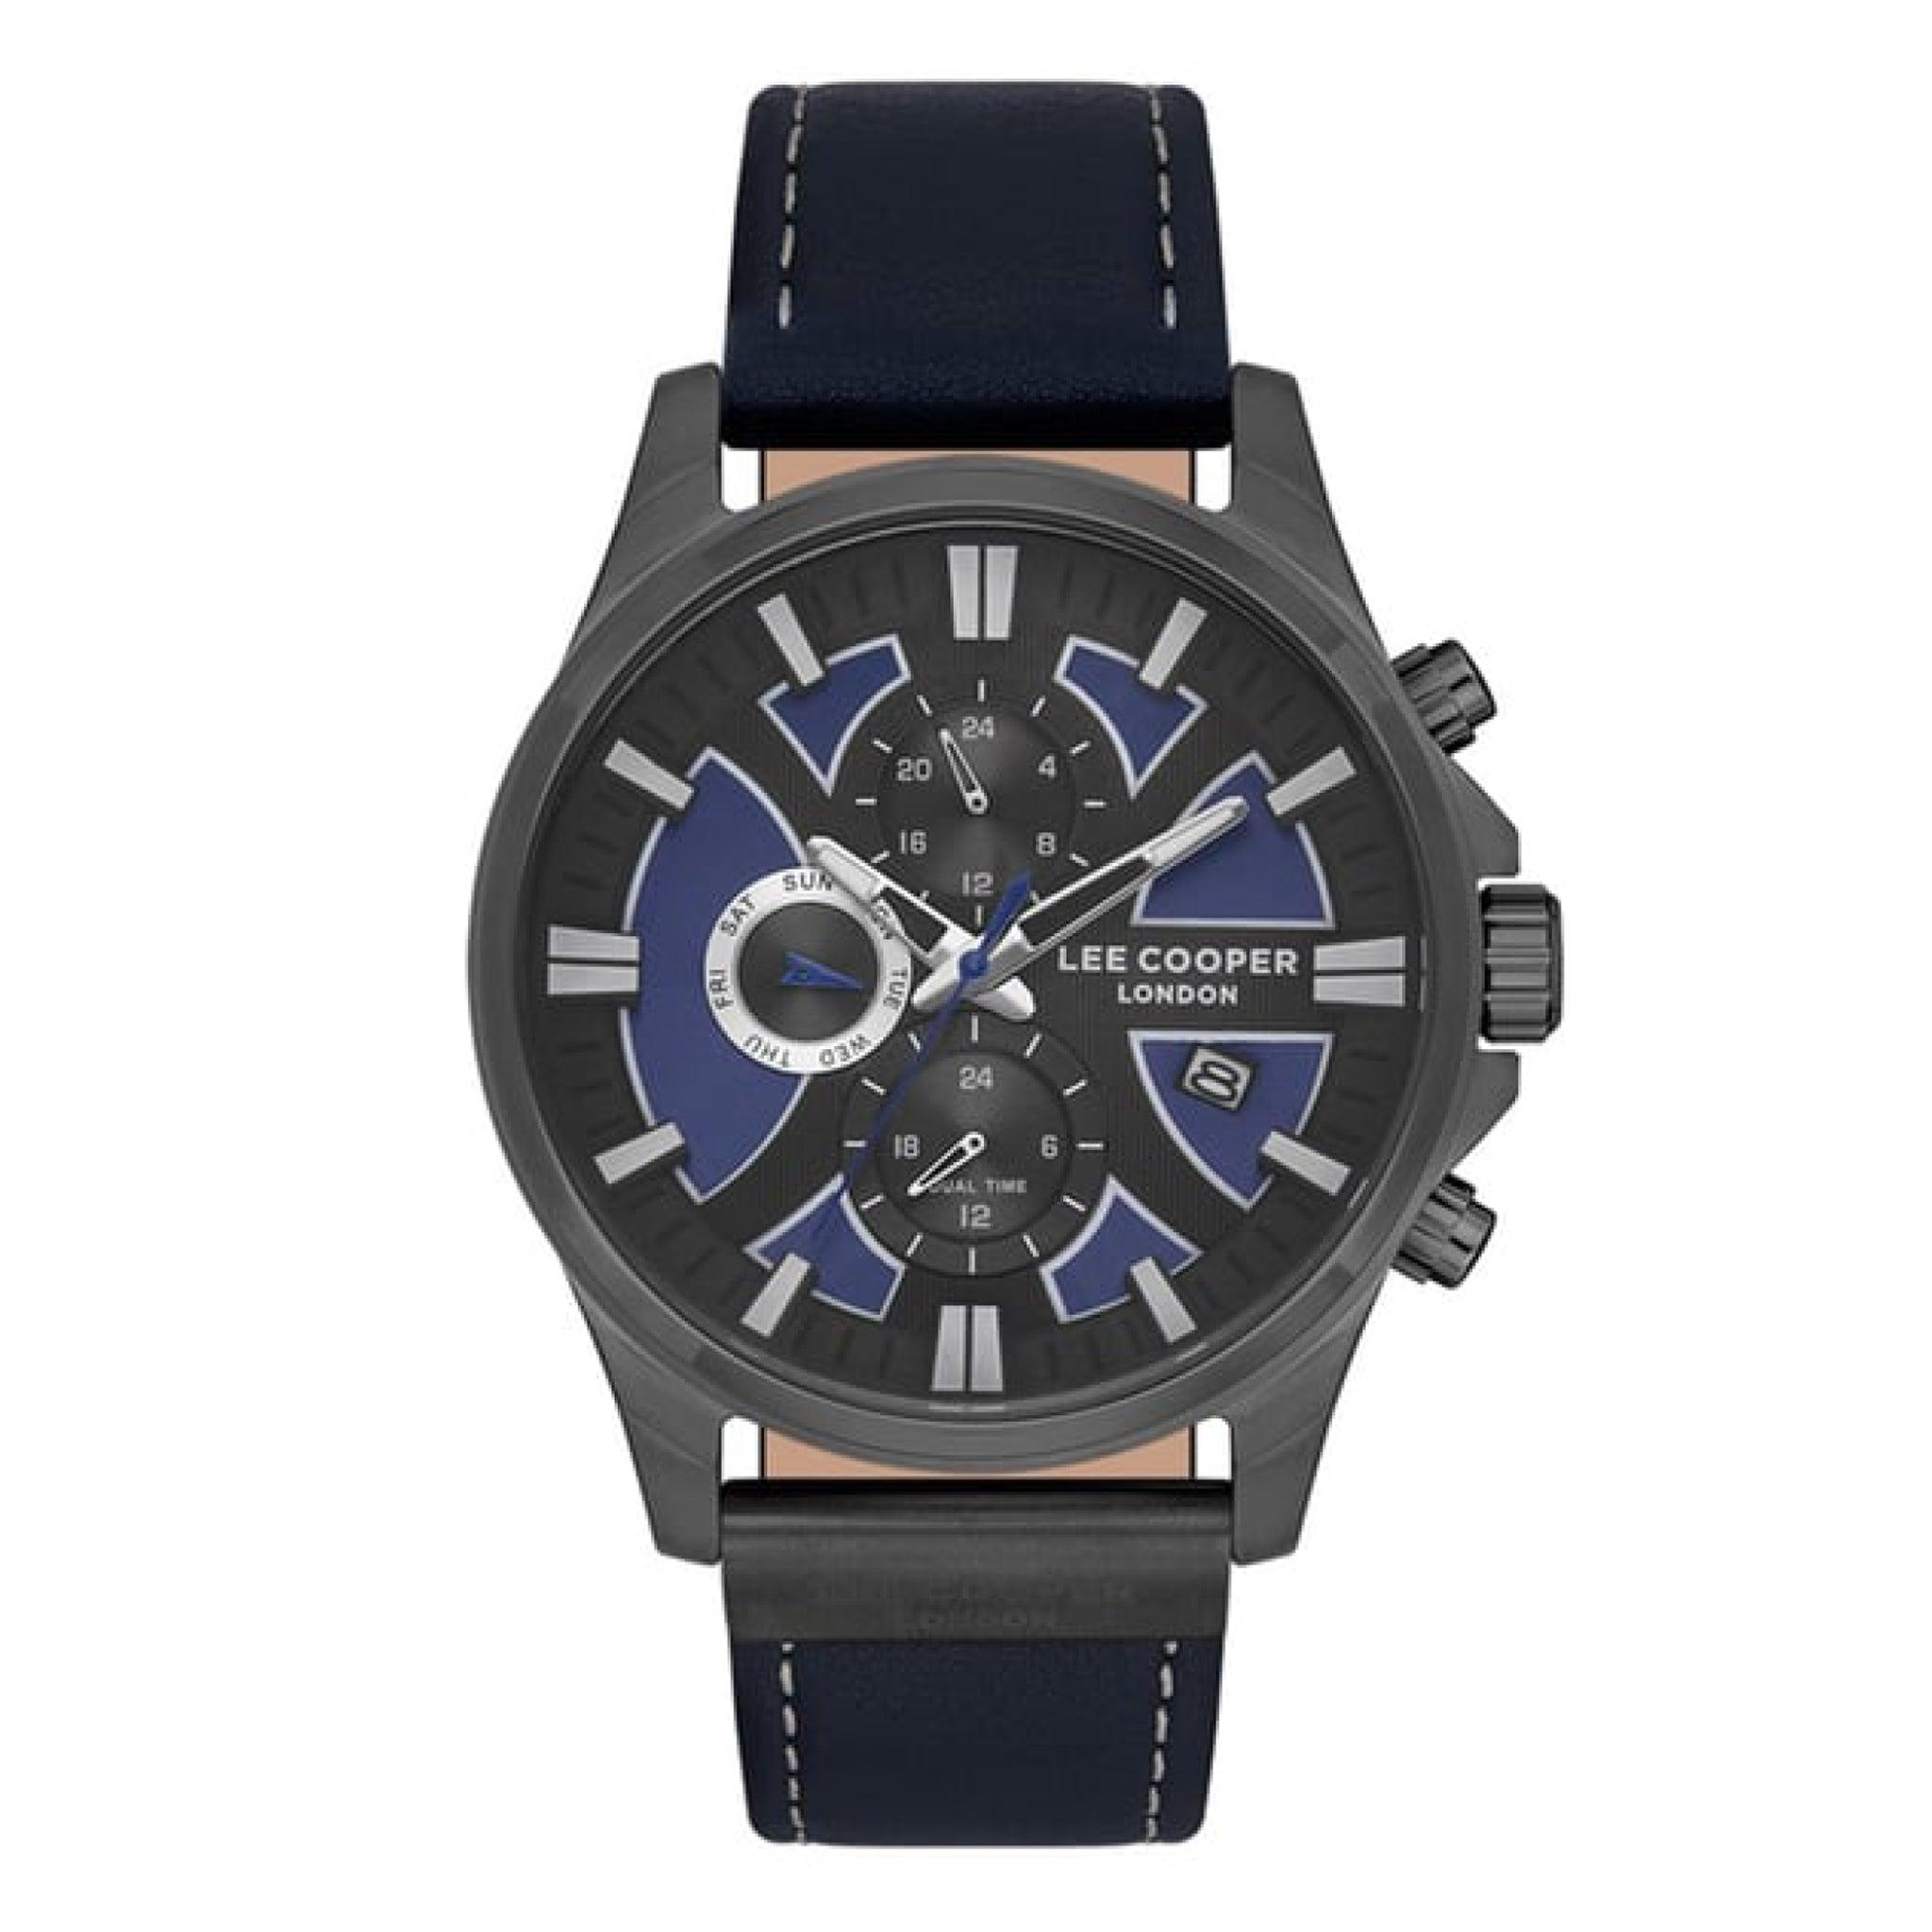 ساعة يد رجالية متعددة الوظائف - أزرق و أسود و مينا باللون الأزرق الغامق - بحزام أسود من السيليكون لي كوبر Lee Cooper Men's Multi Function Watch